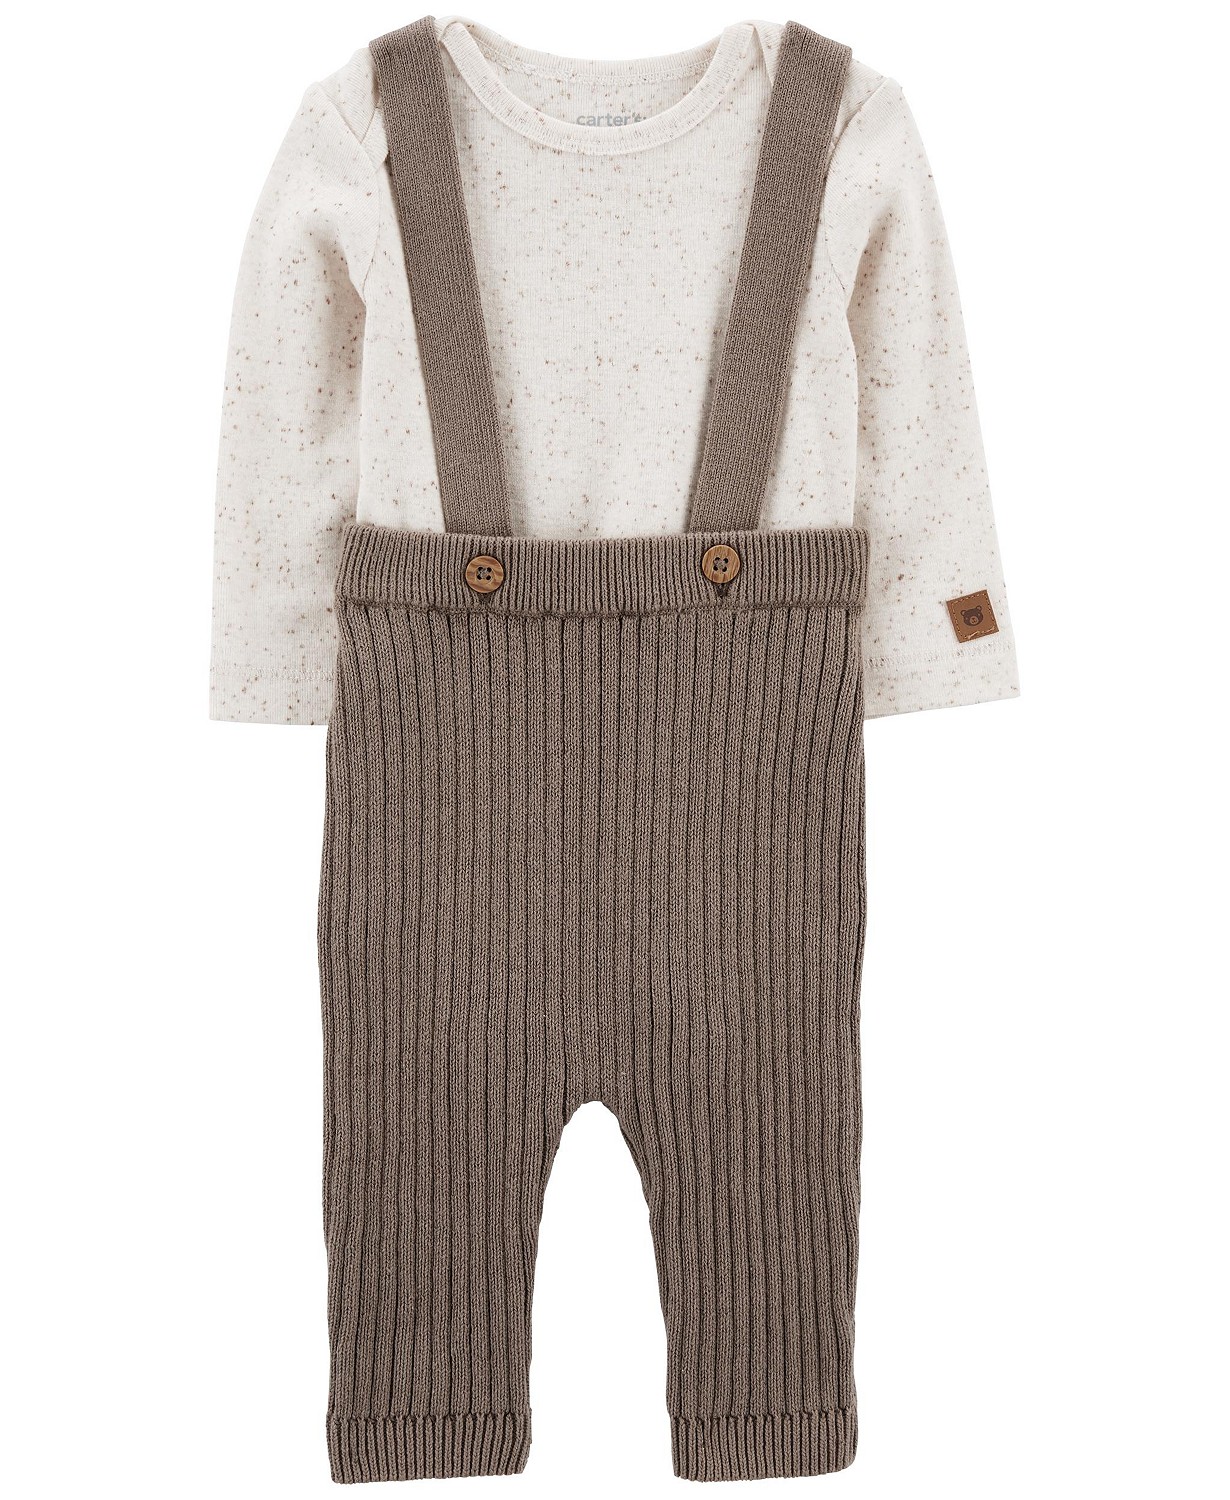 카터스 Baby Boys and Baby Girls Bodysuit and Sweater Coveralls 2 Piece Set